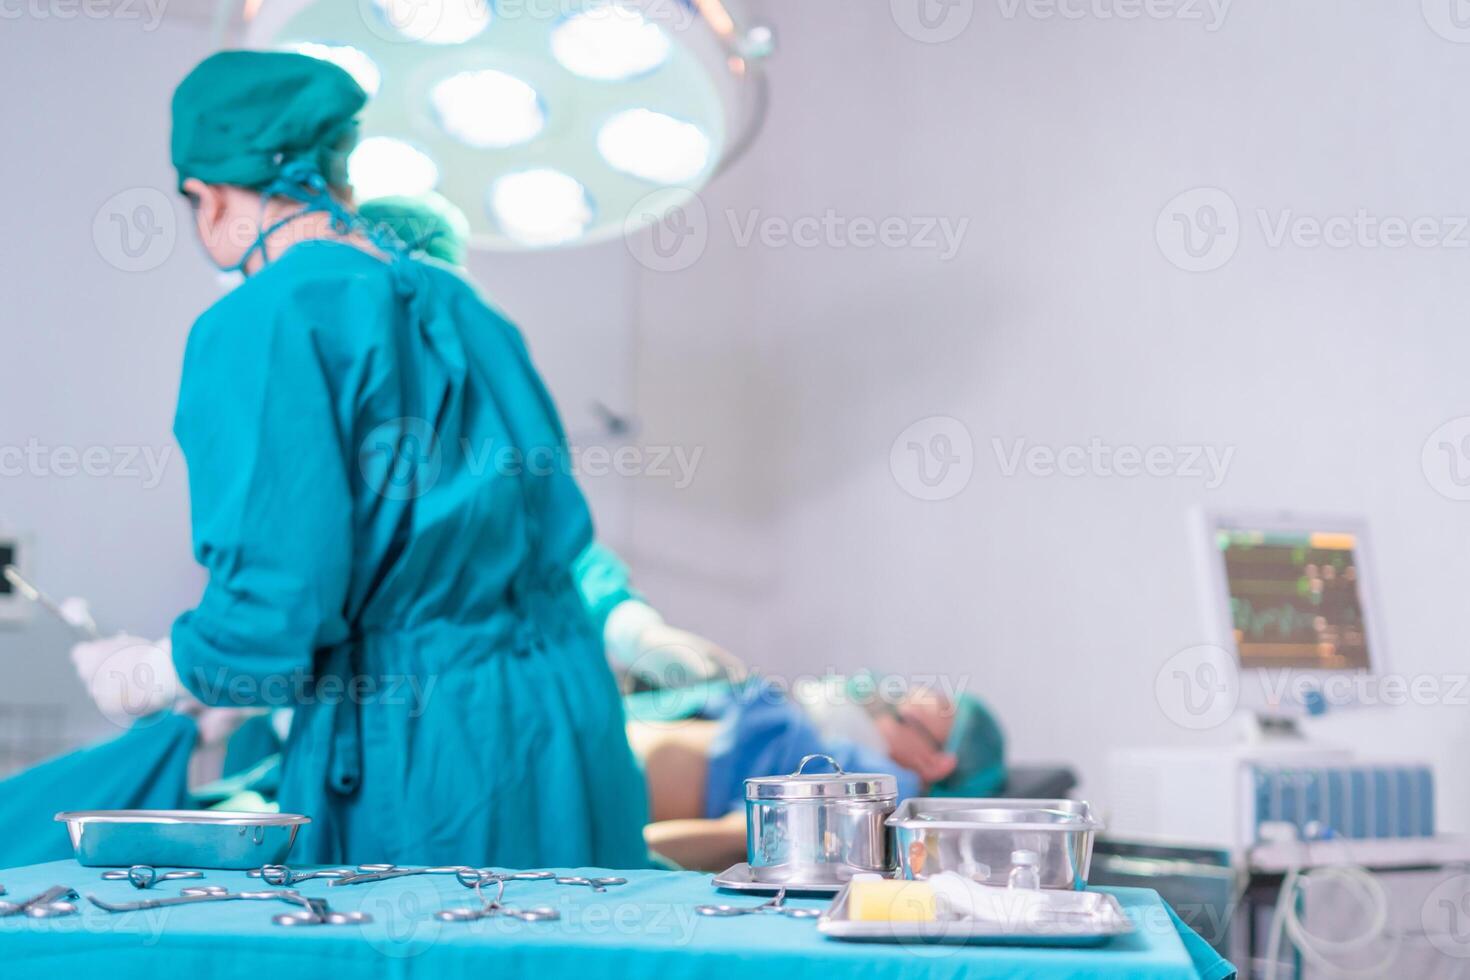 quirúrgico instrumentos y herramientas incluso bisturís, pinzas, y pinzas arreglado en un mesa para cirugía, operando habitación con cirugía equipo, preparando médico instrumentos para operación foto